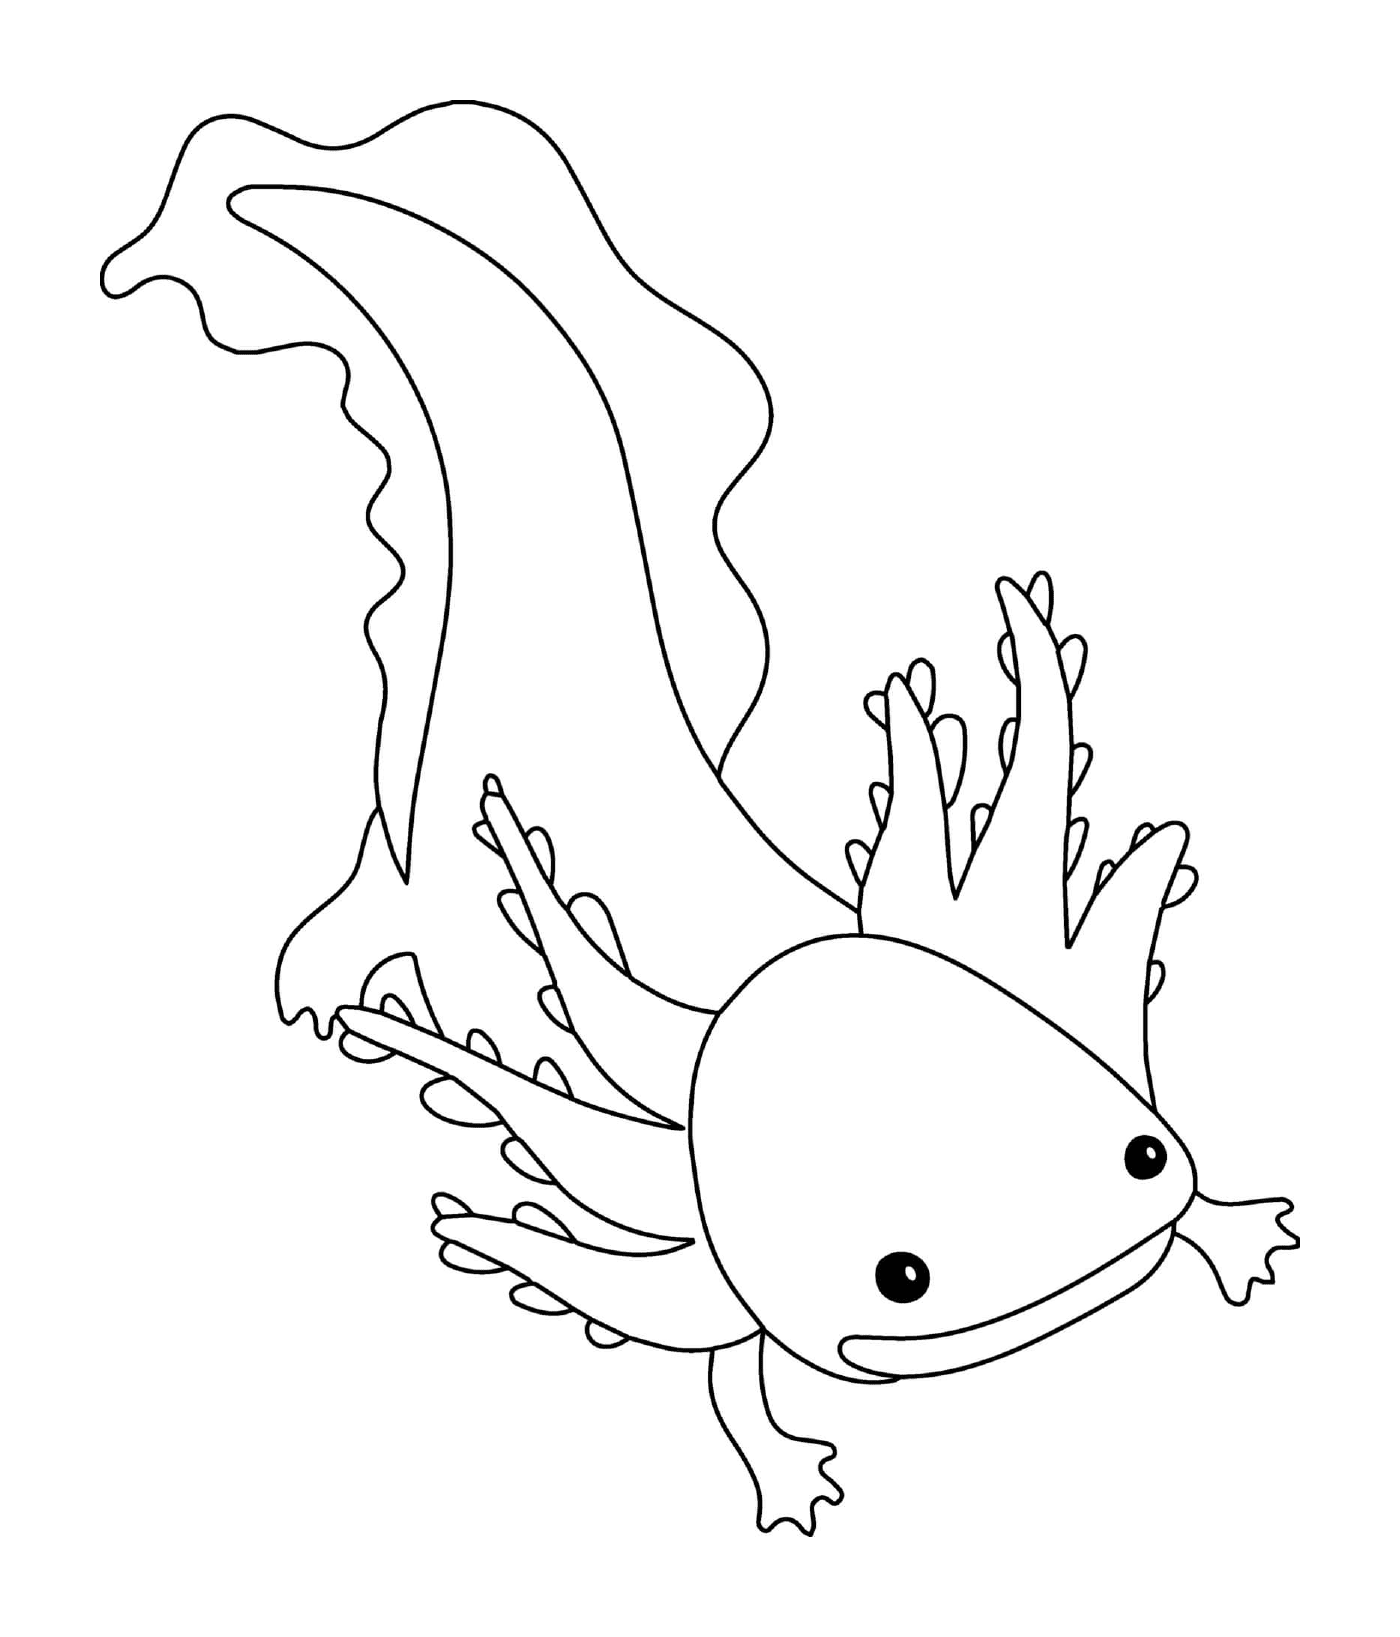  Axolotl metamorphosiert sich nie 